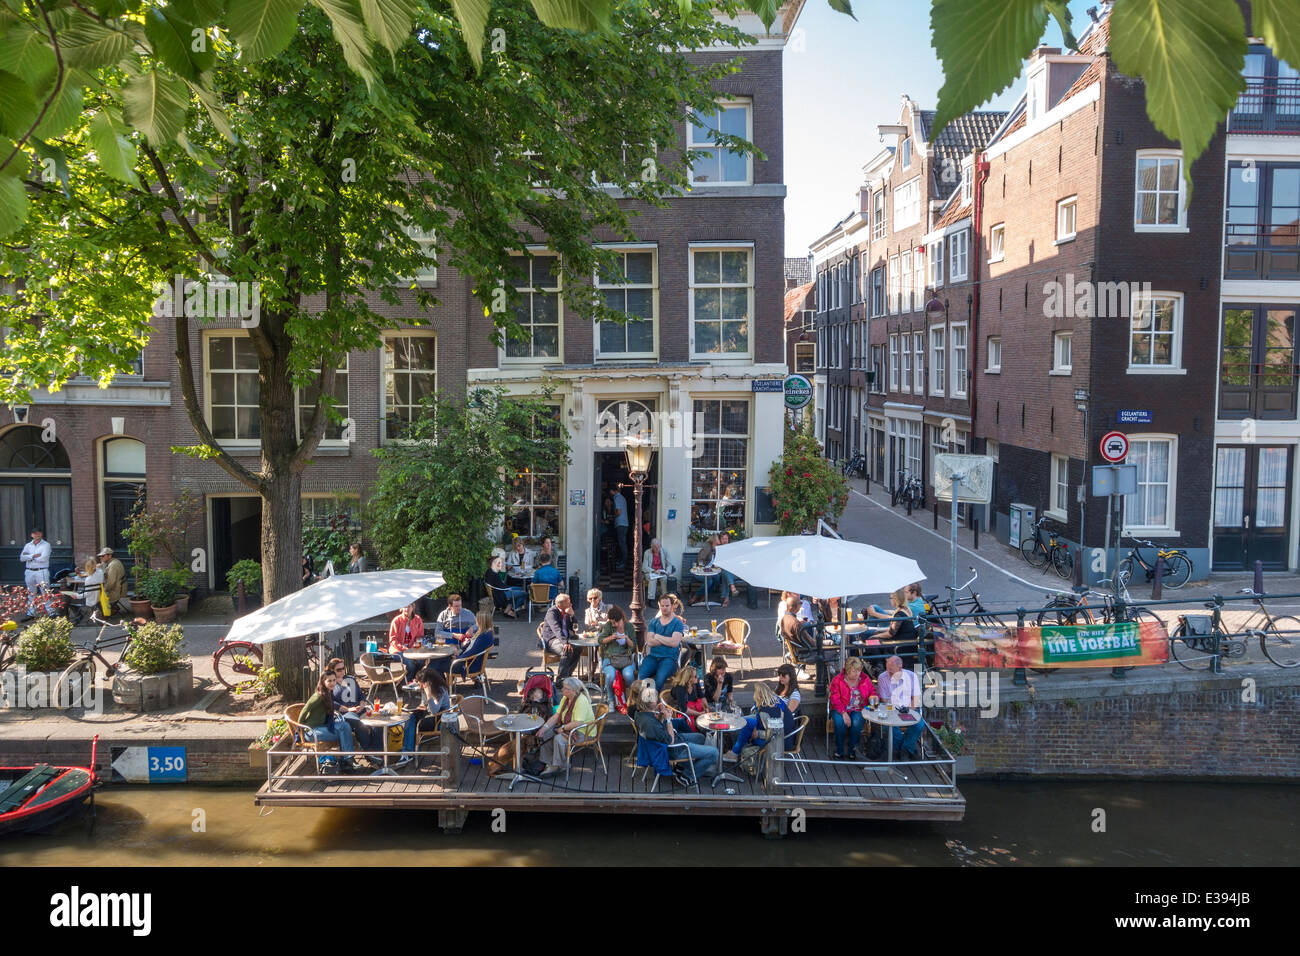 Amsterdam Café 't Smalle en el Egelantiersgracht en el barrio del Jordaan, con su singular terraza sobre pilotes en el canal. Foto de stock